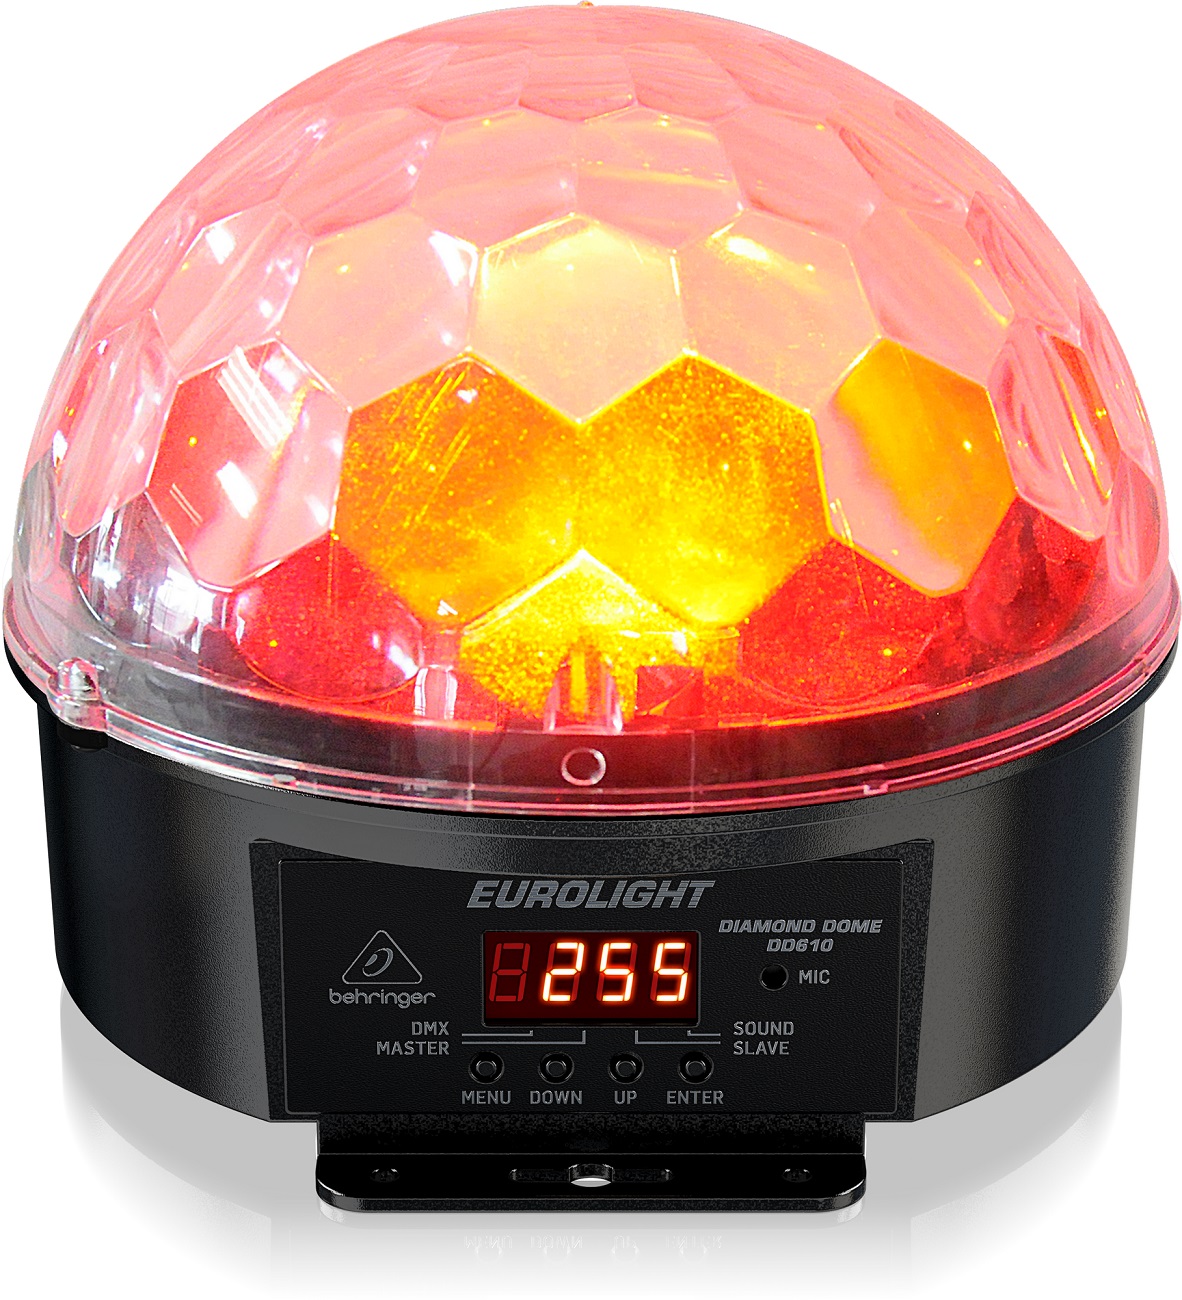 BEHRINGER DIAMOND DOME DD610 EFFETTO LUCE LED CRYSTAL MAGIC BALL MEZZA SFERA RGBWAUV 6IN1 12W 1